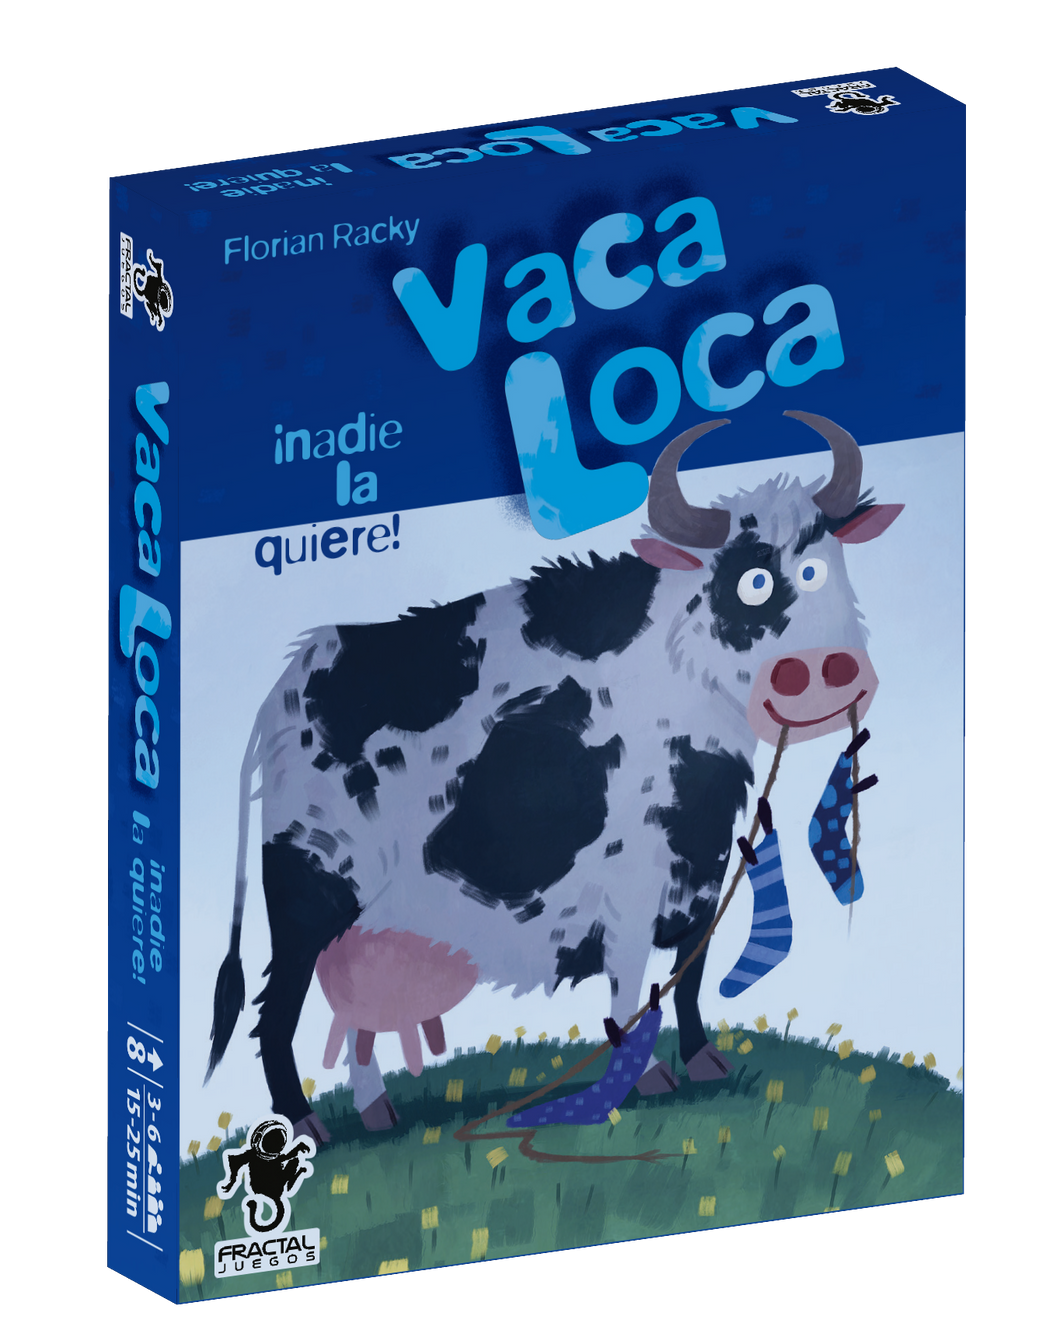 Vaca Loca